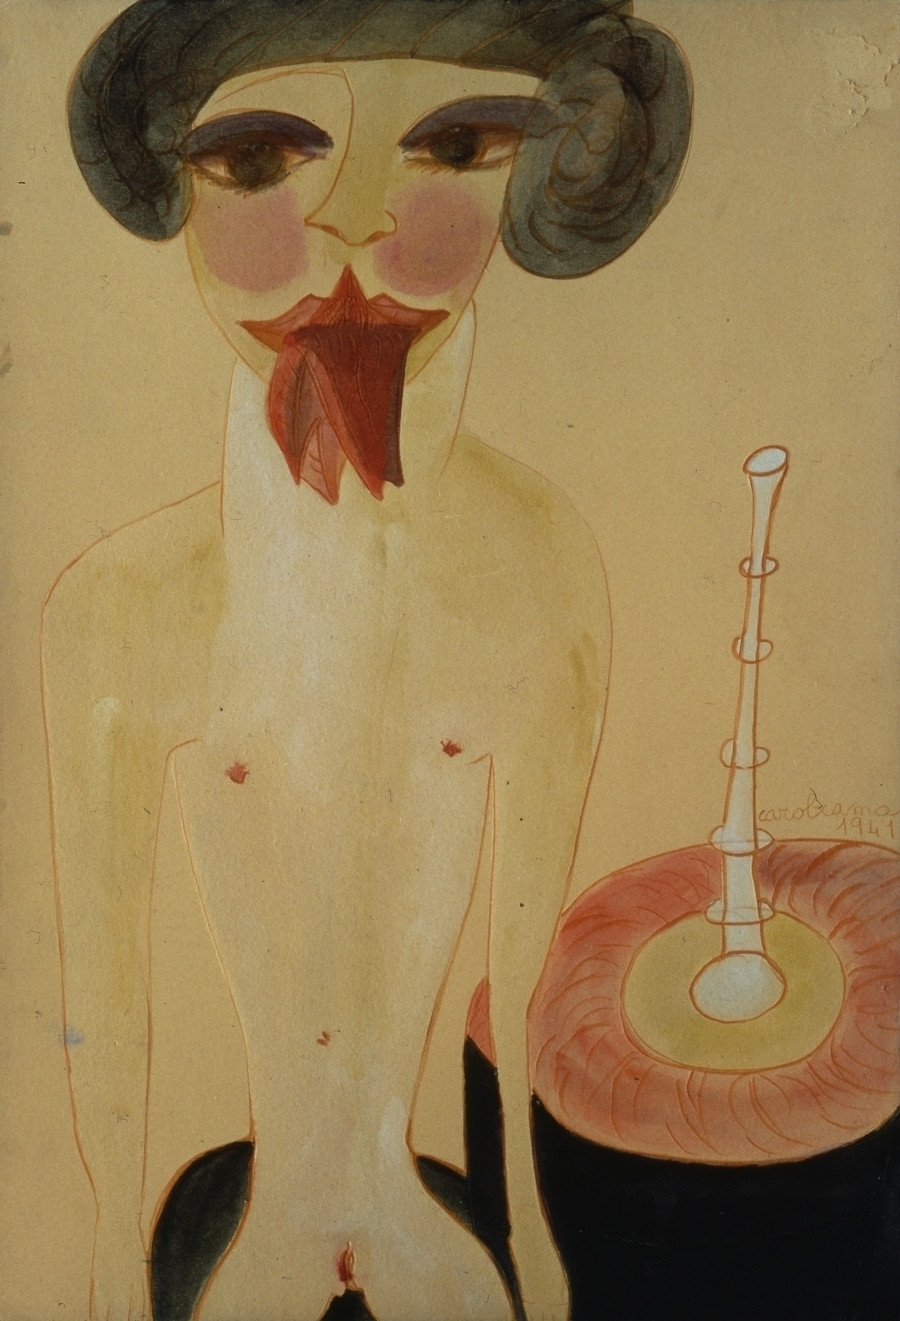 imagen 3 de Carol Rama, una representación disidente de la sexualidad femenina.